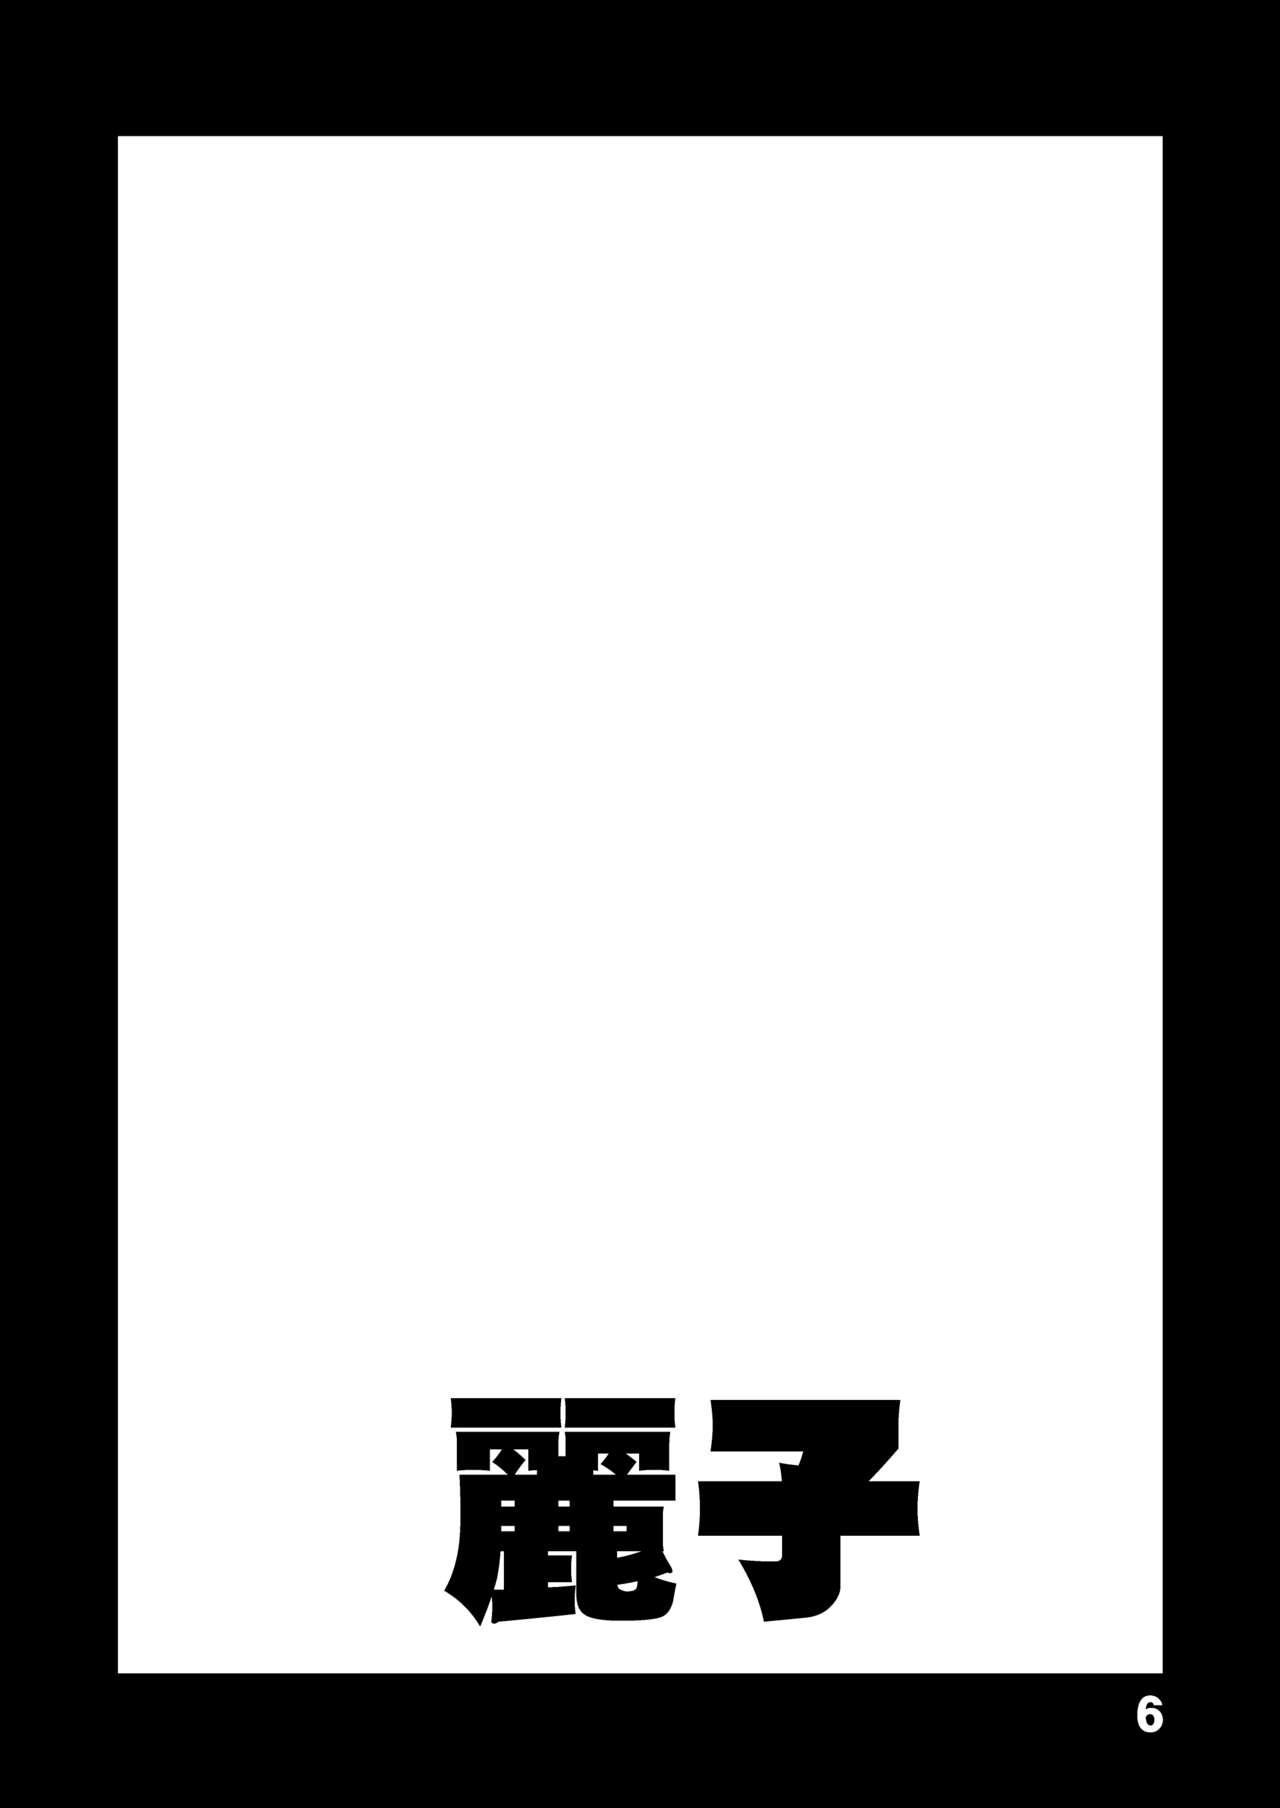 Female Domination こ○亀オゲレツイラスト集 1+2 - Kochikame Con - Page 6